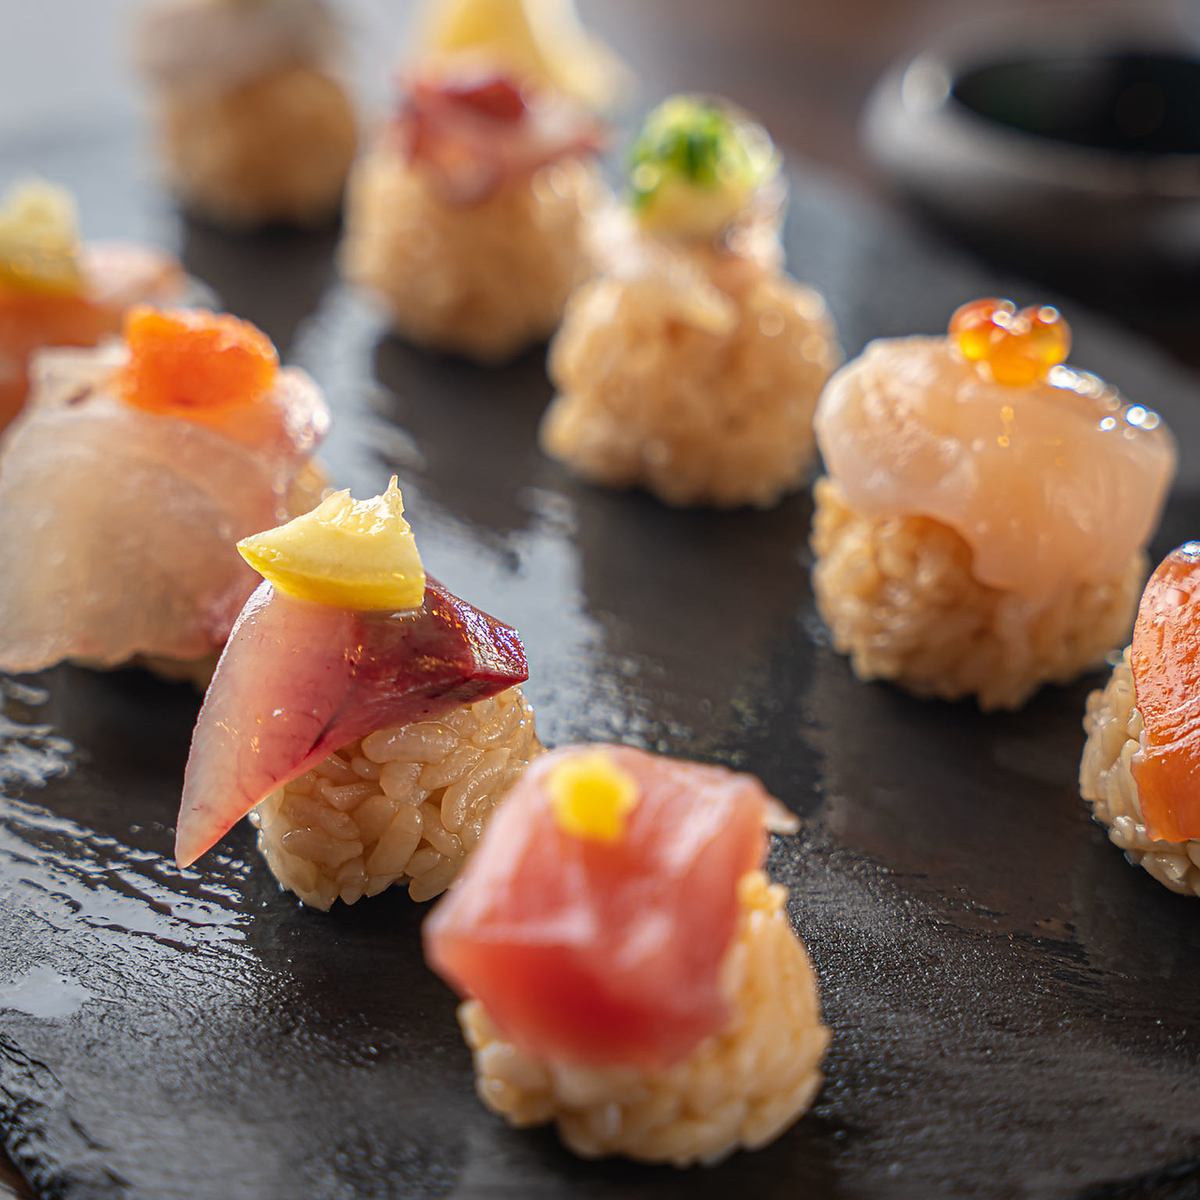 可以以合理的价格享用精选美食的便宜又美味的寿司居酒屋。